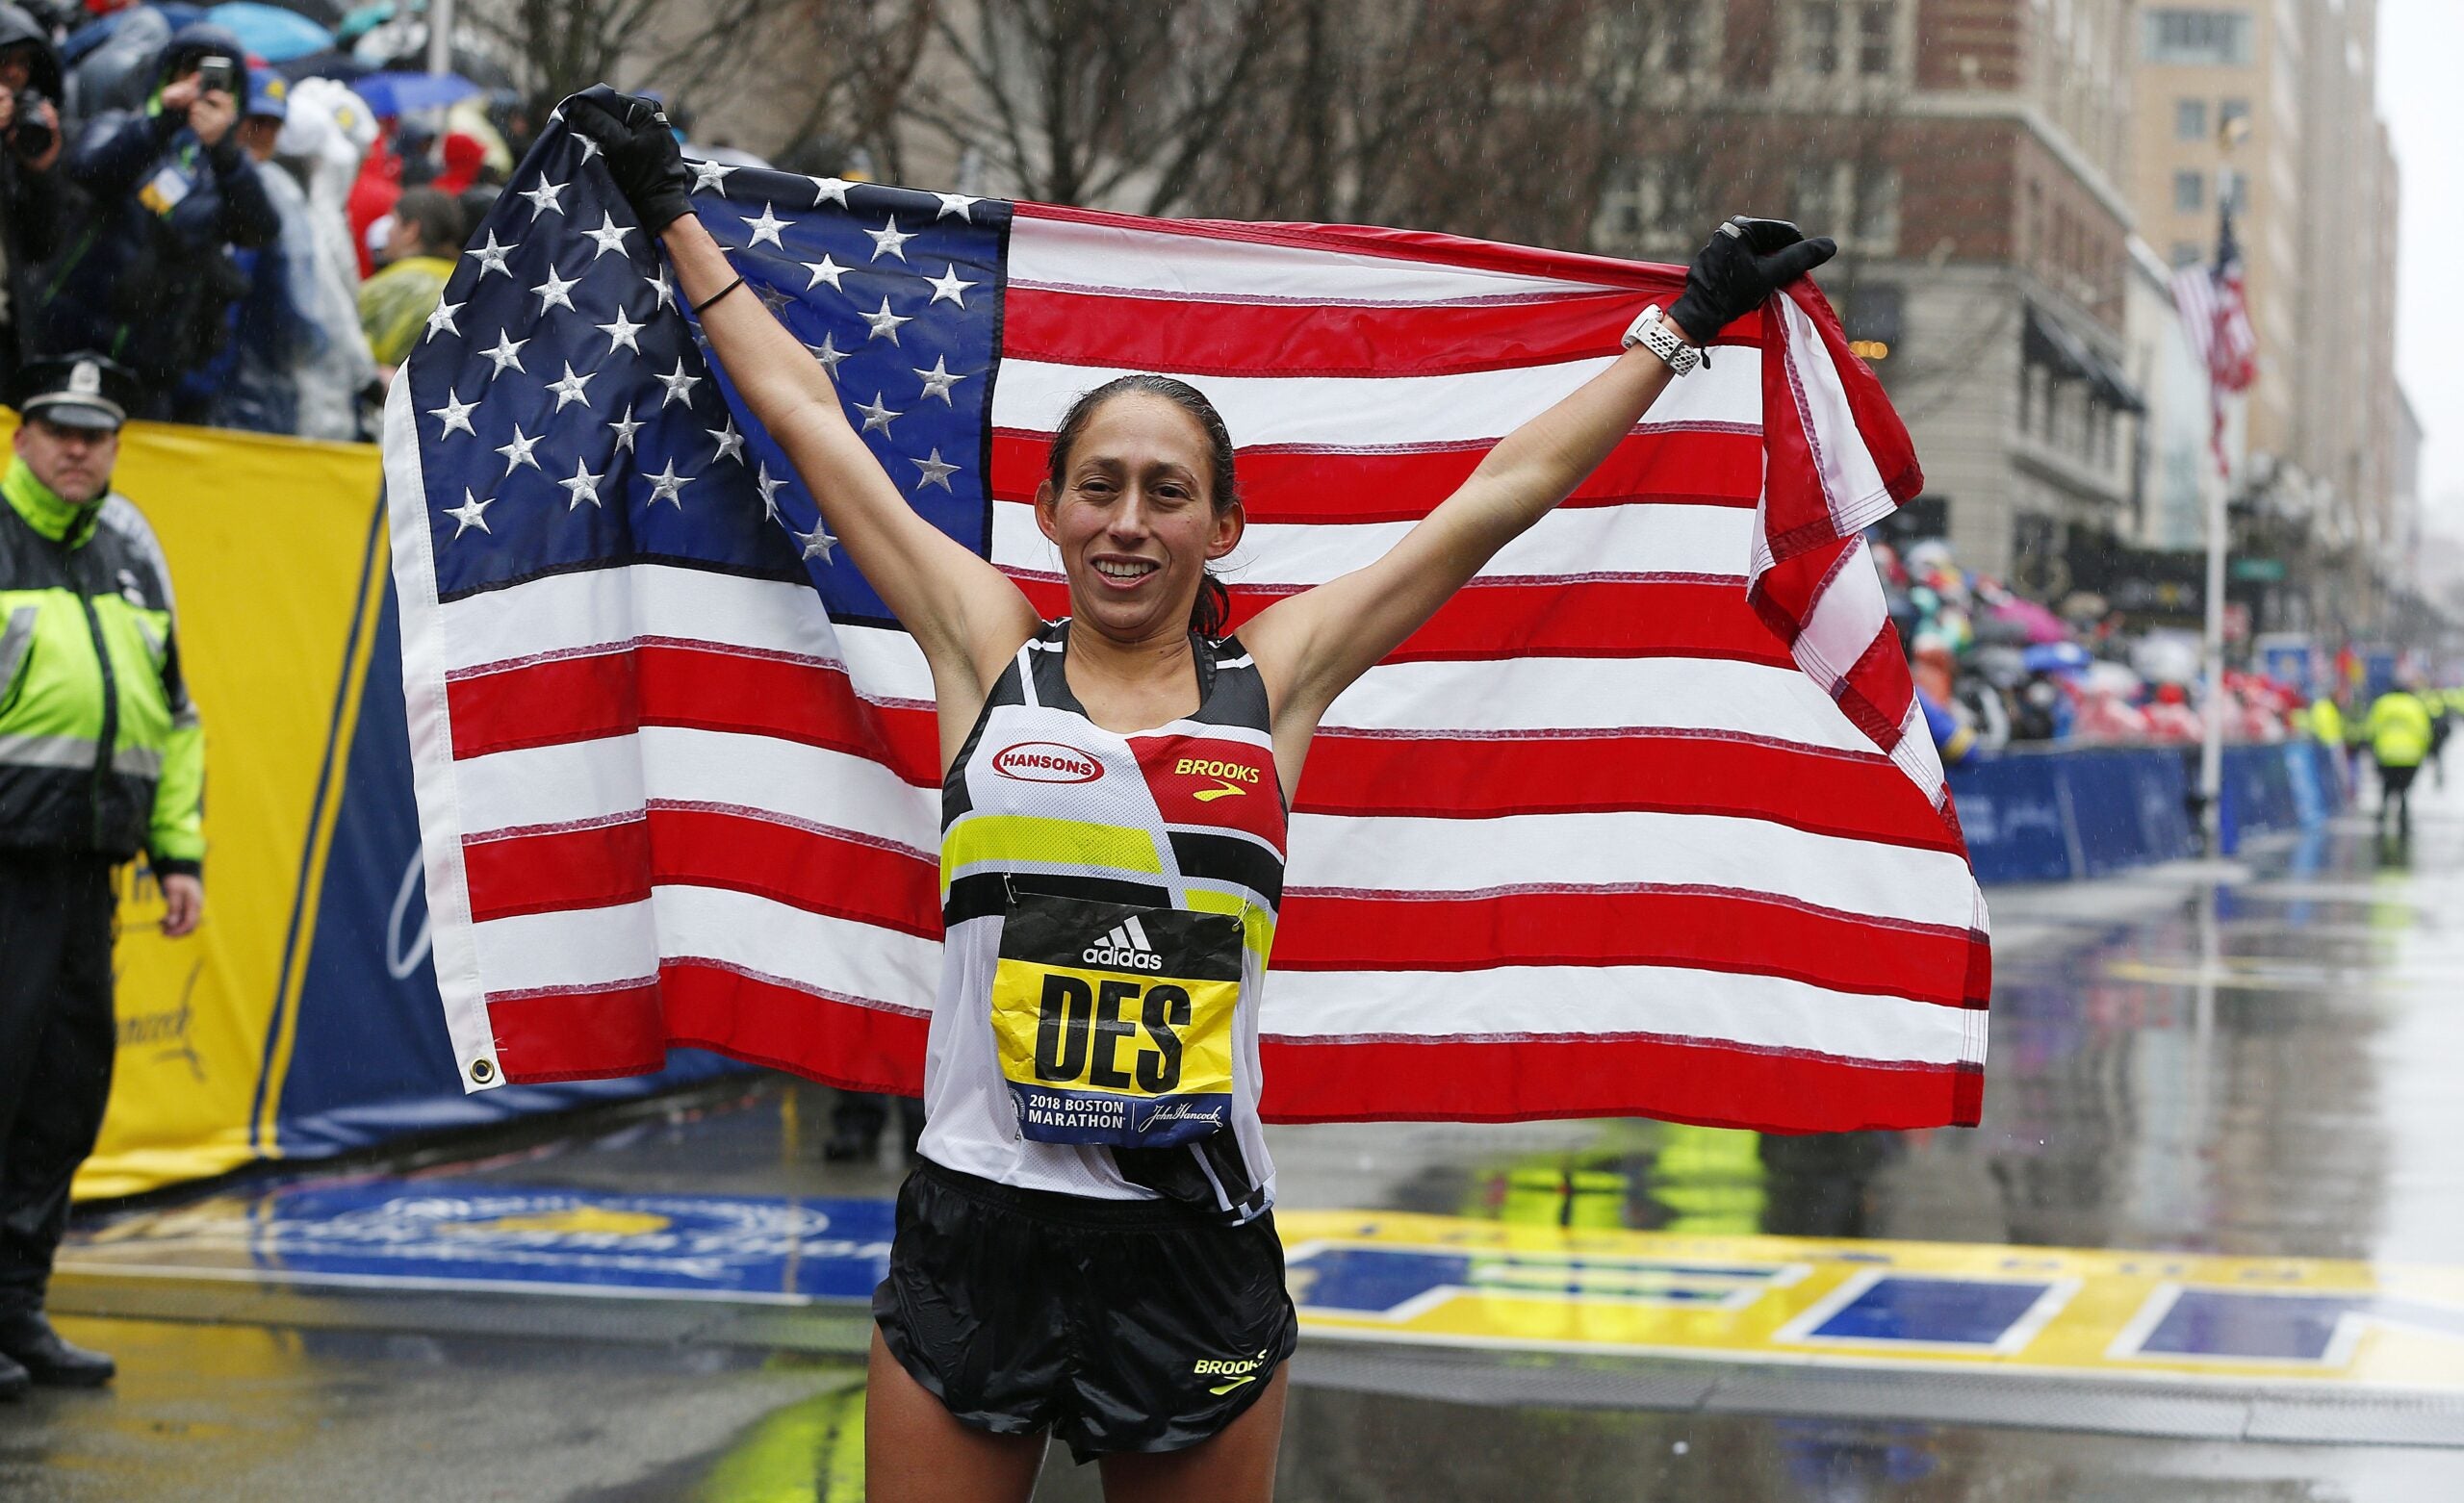 Des Linden wins the 2018 Boston Marathon.